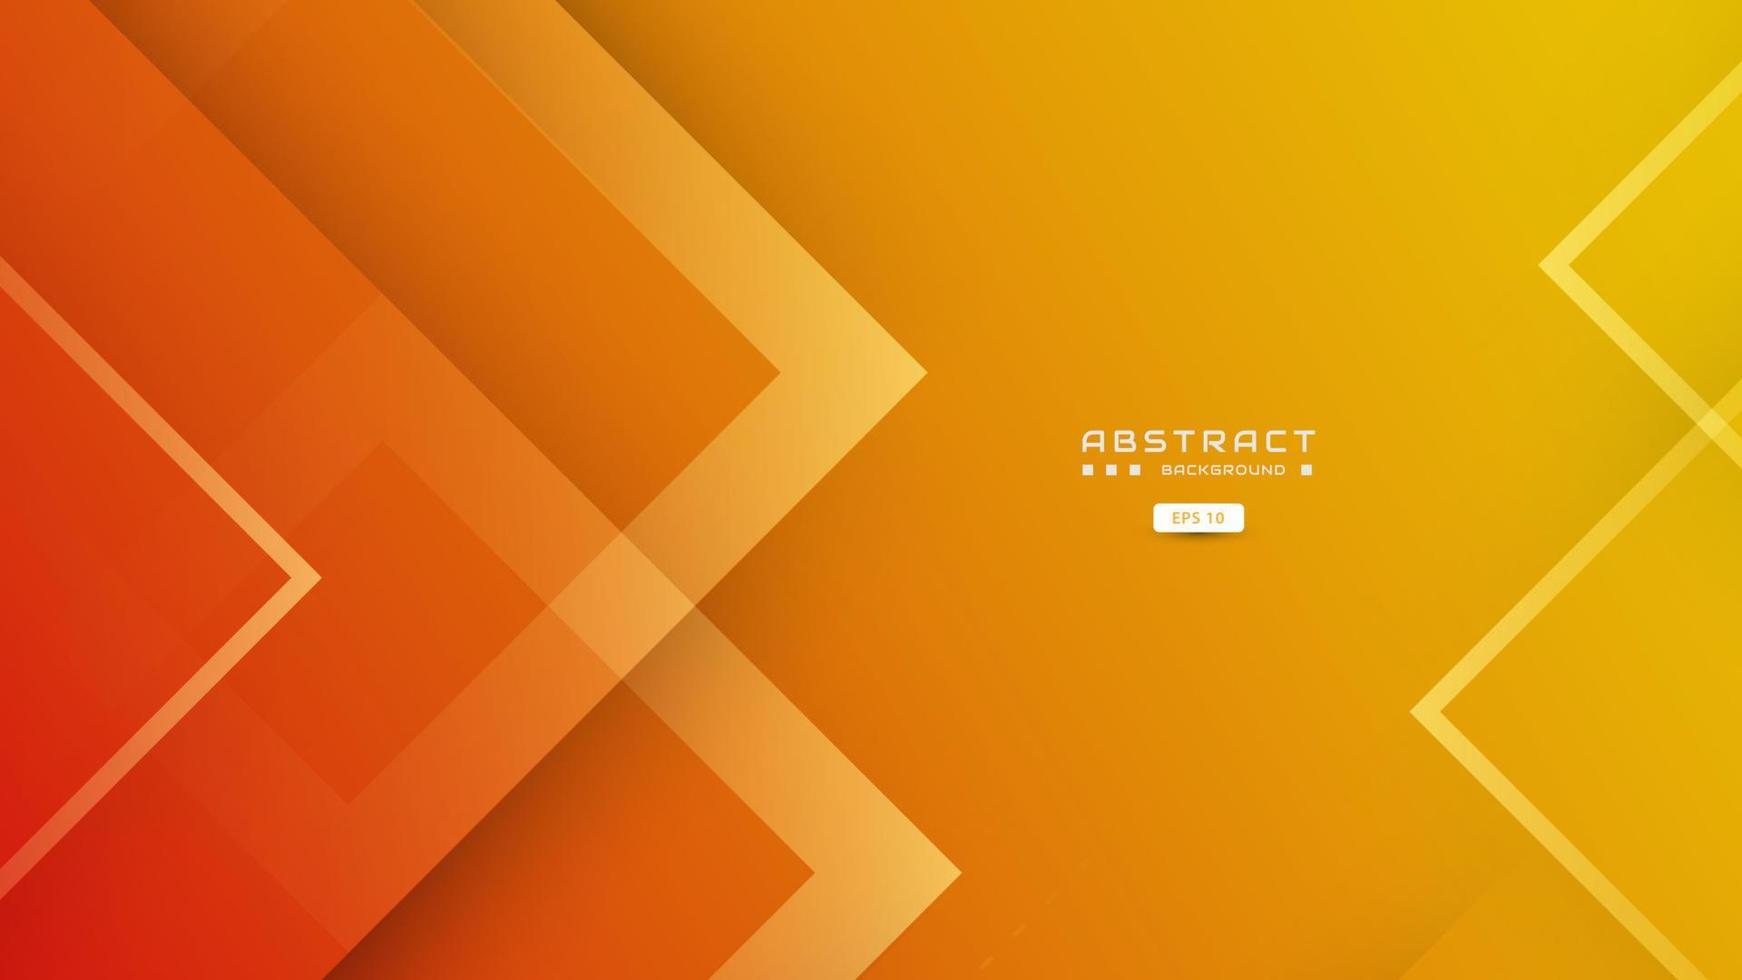 sfondo arancione con forma quadrata sovrapposta creativa, vettore di concetto di banner moderno.